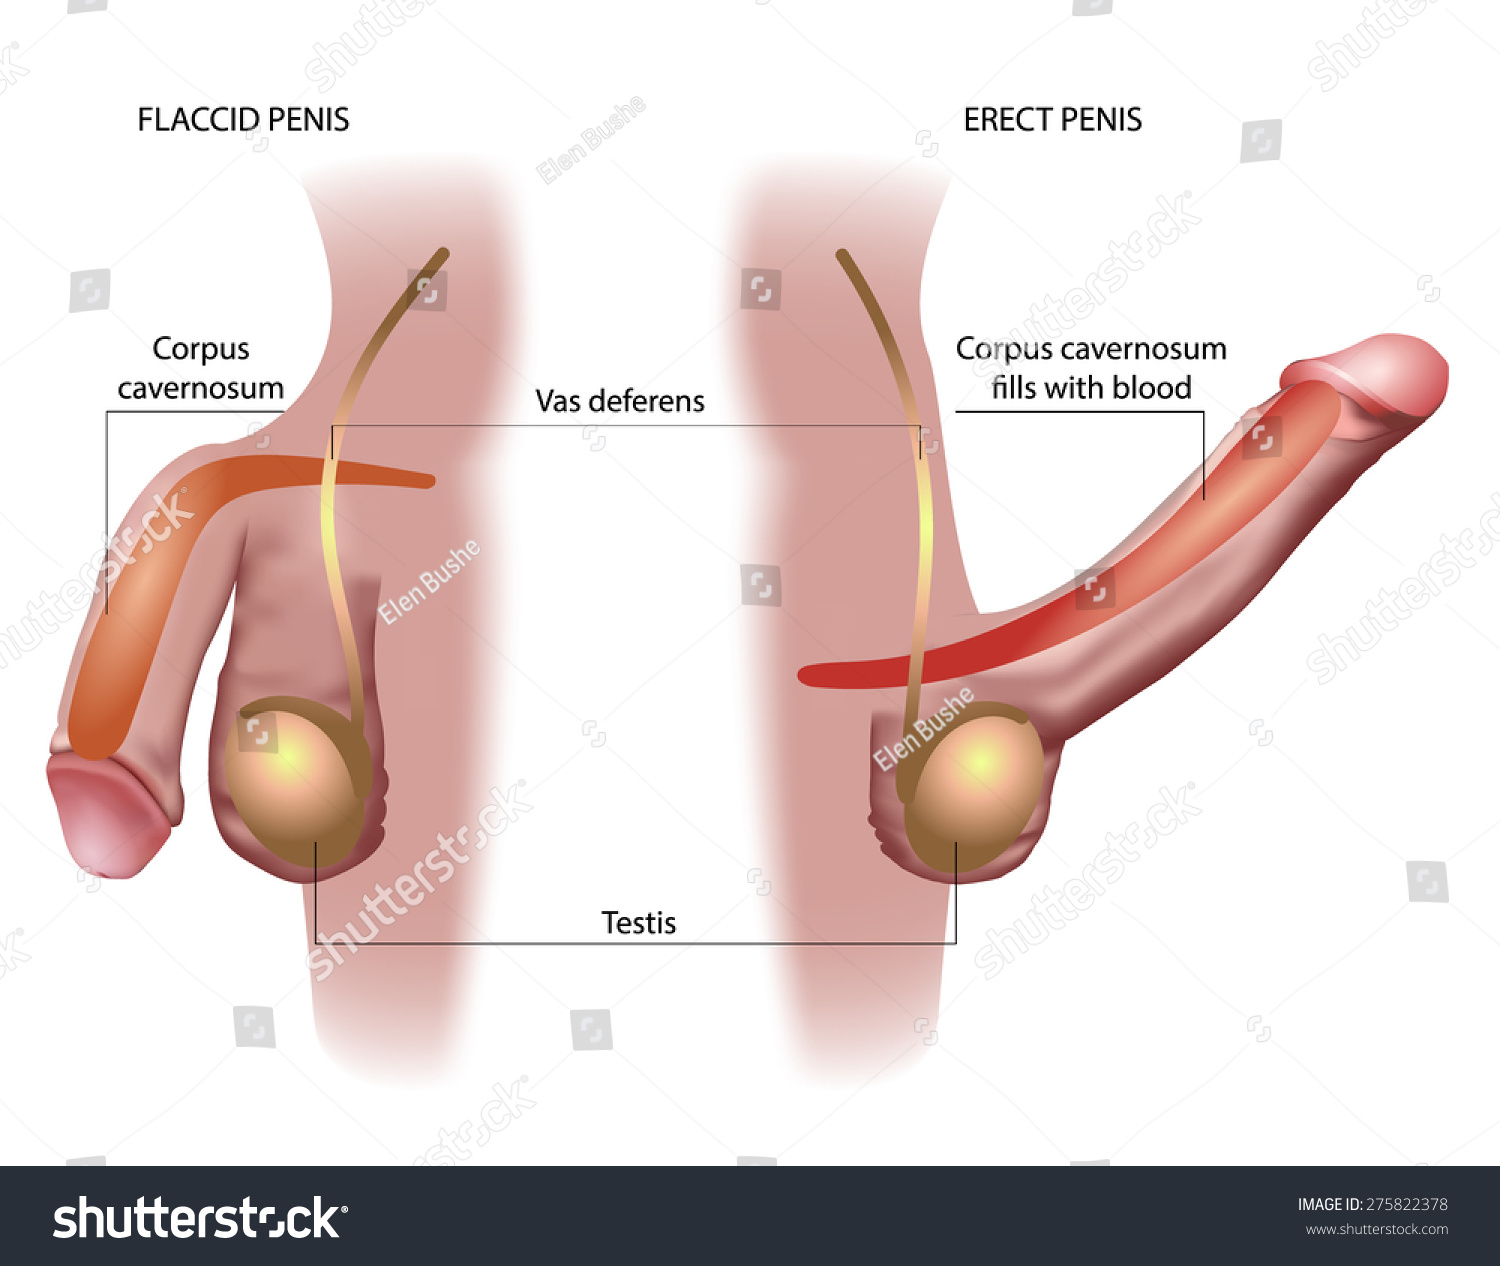 Penis Erection Image 80